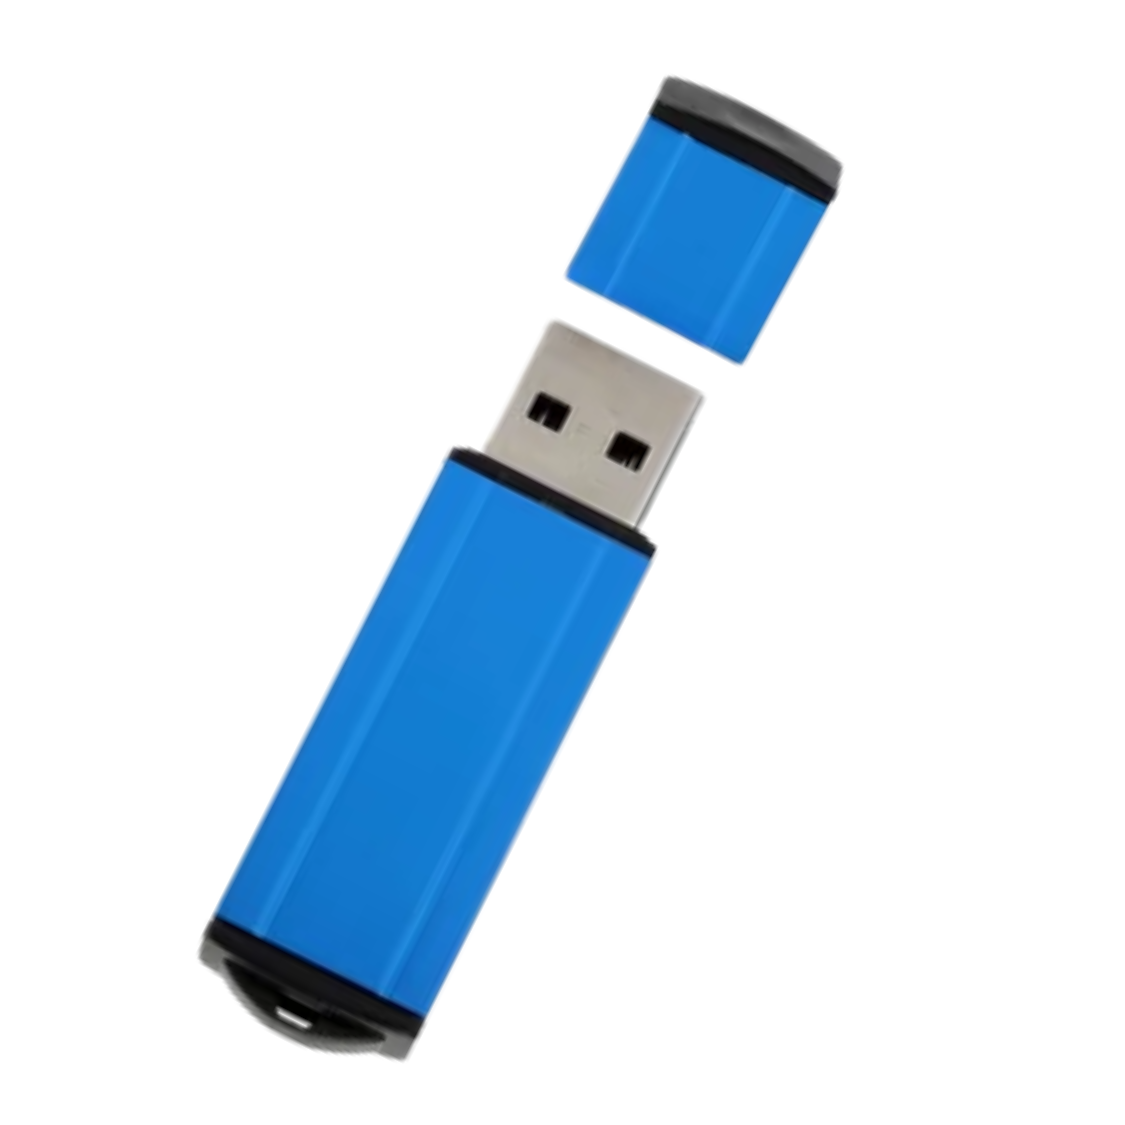 USB225, MEMORIA USB LINER